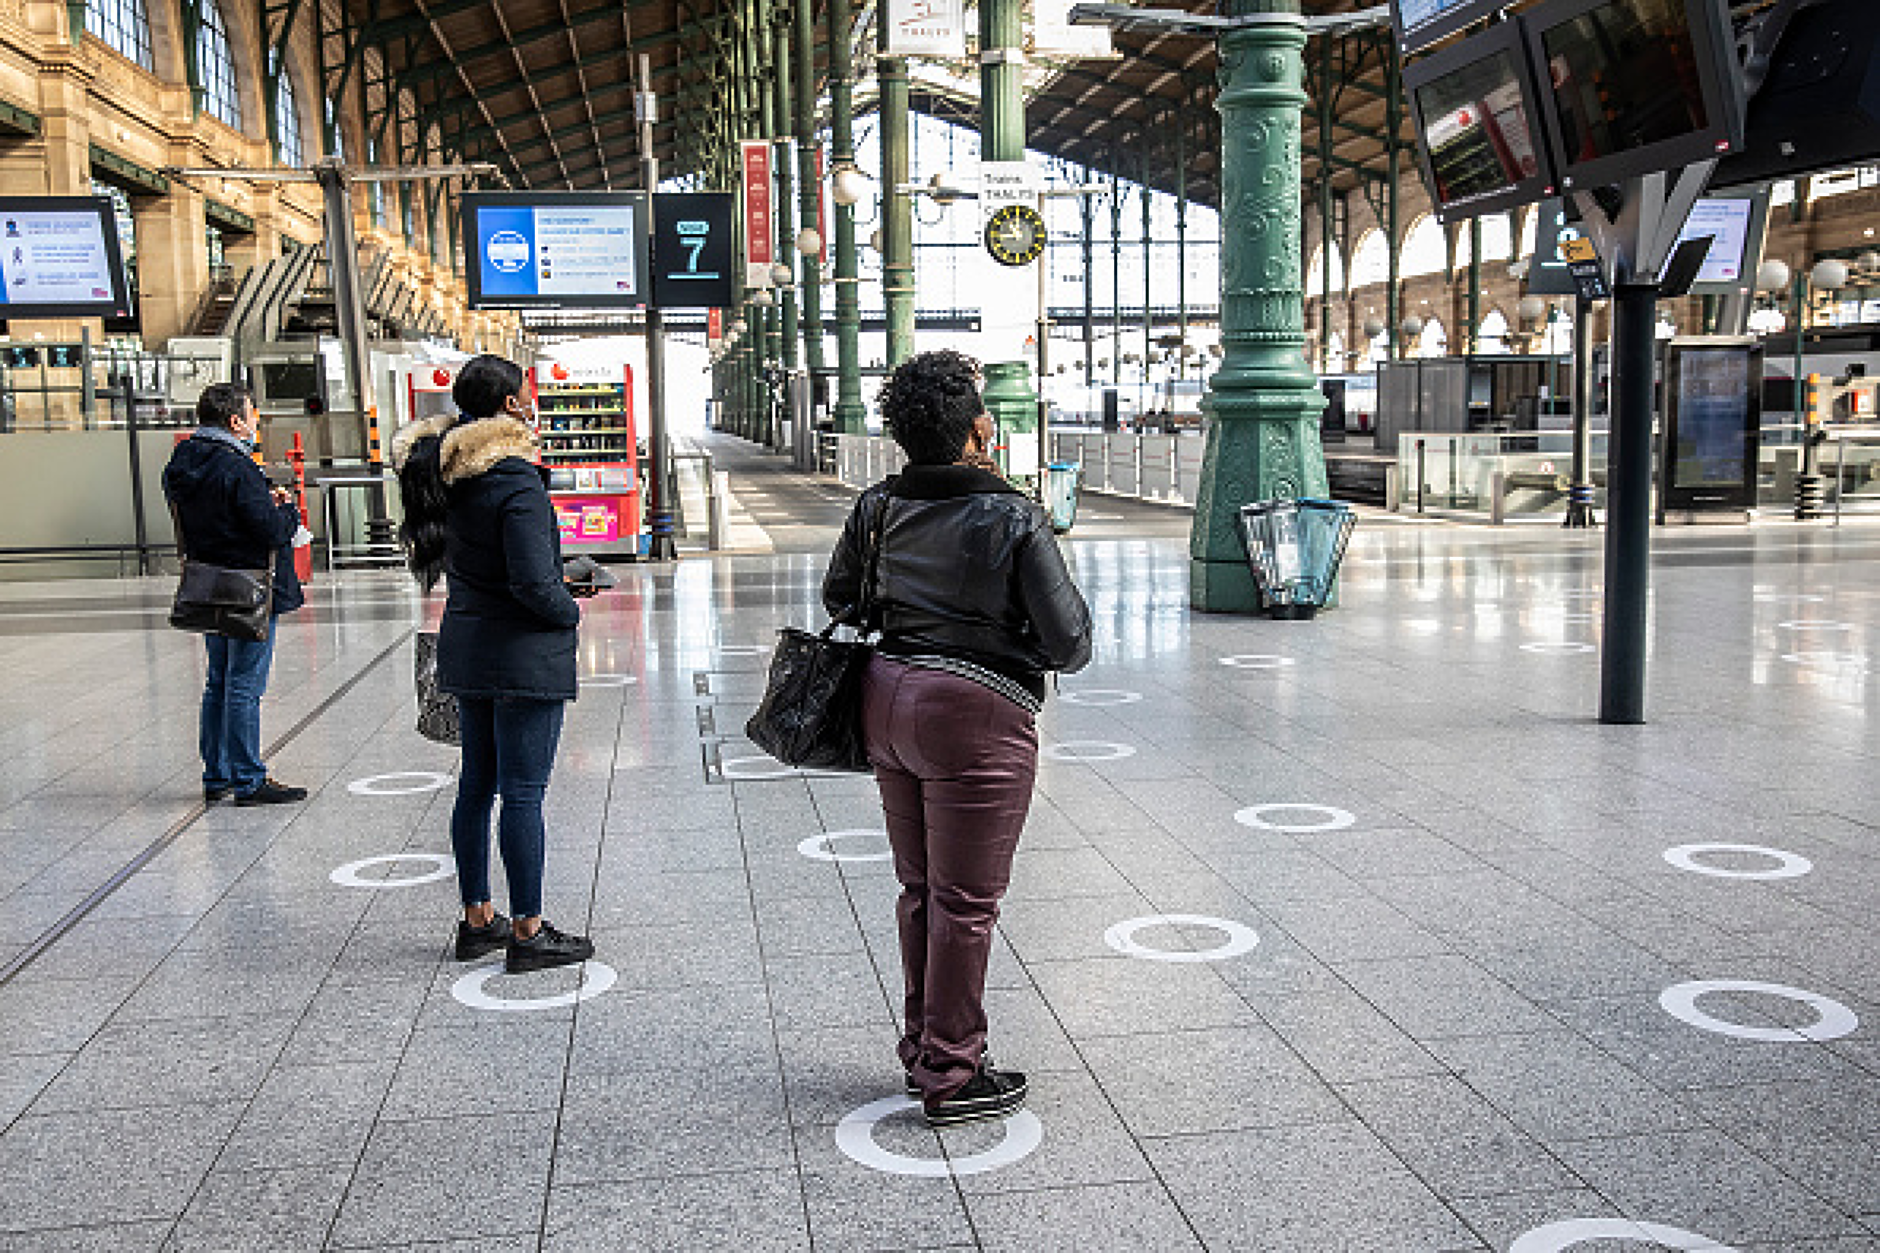 Поредна стачка срещу пенионната реформа спря влаковете във Франция